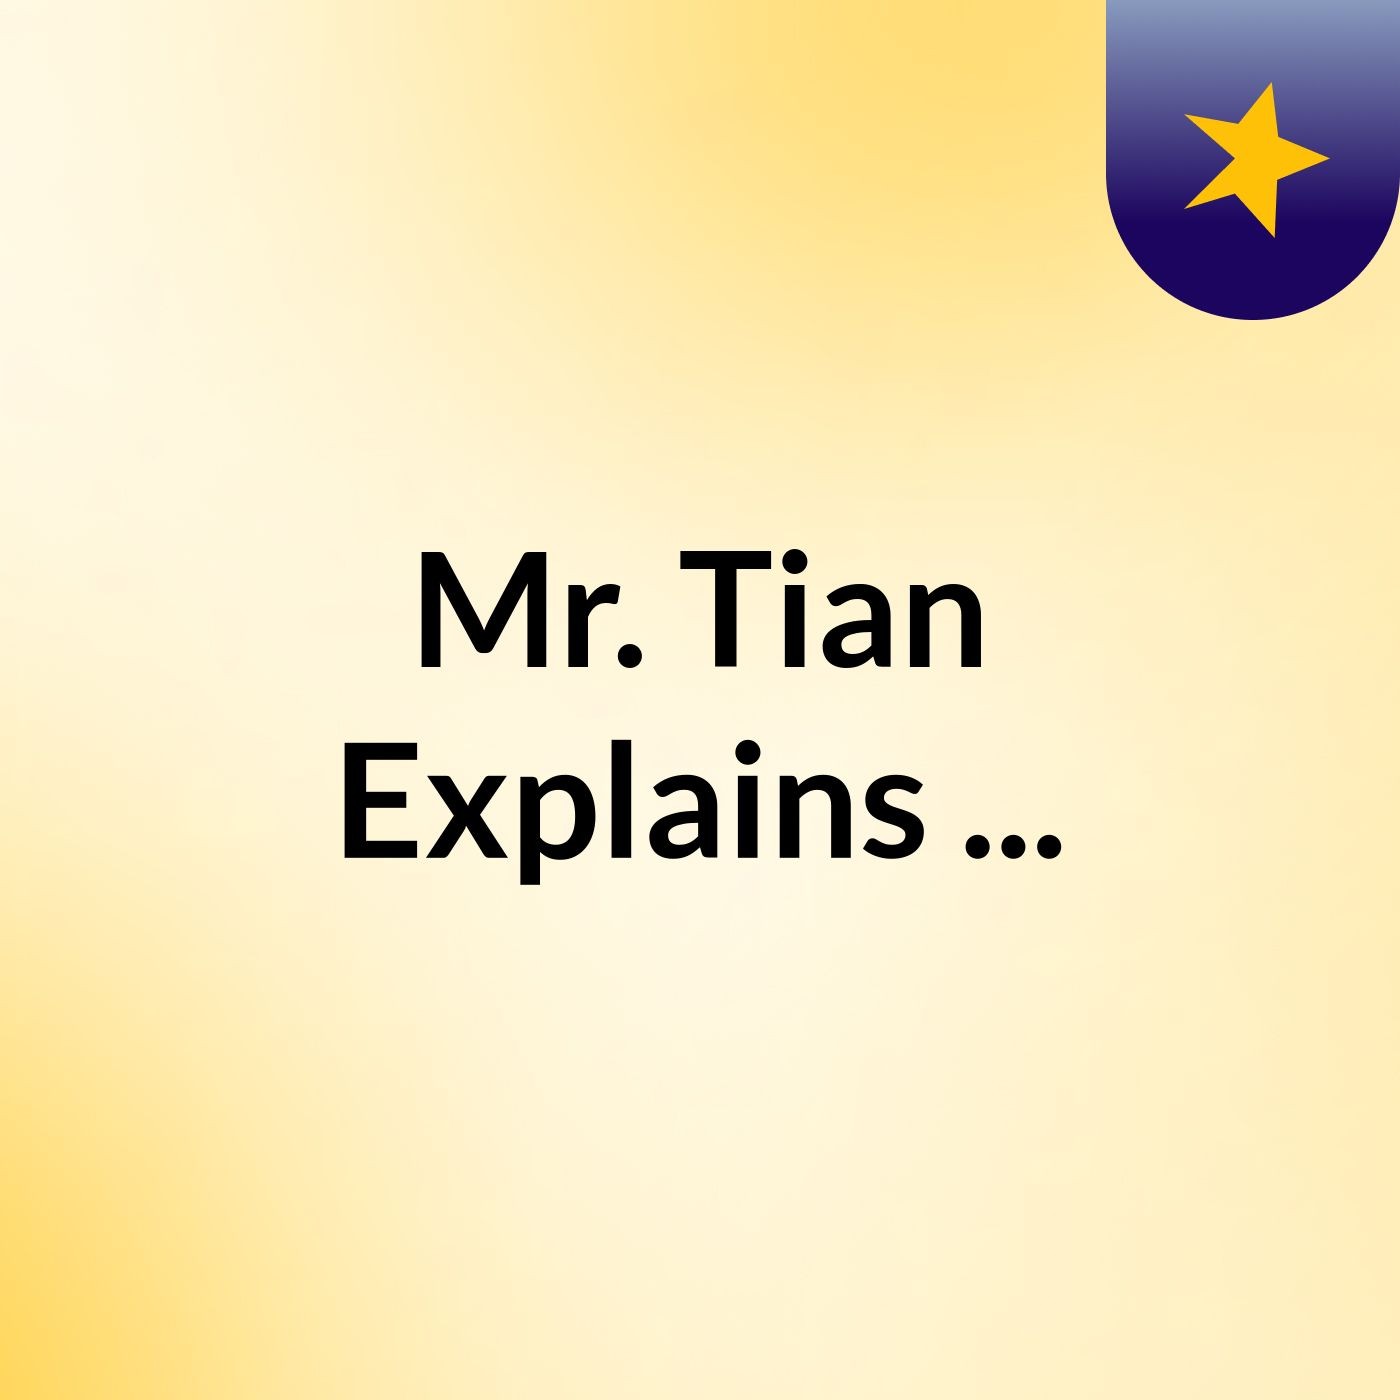 Mr. Tian Explains ...